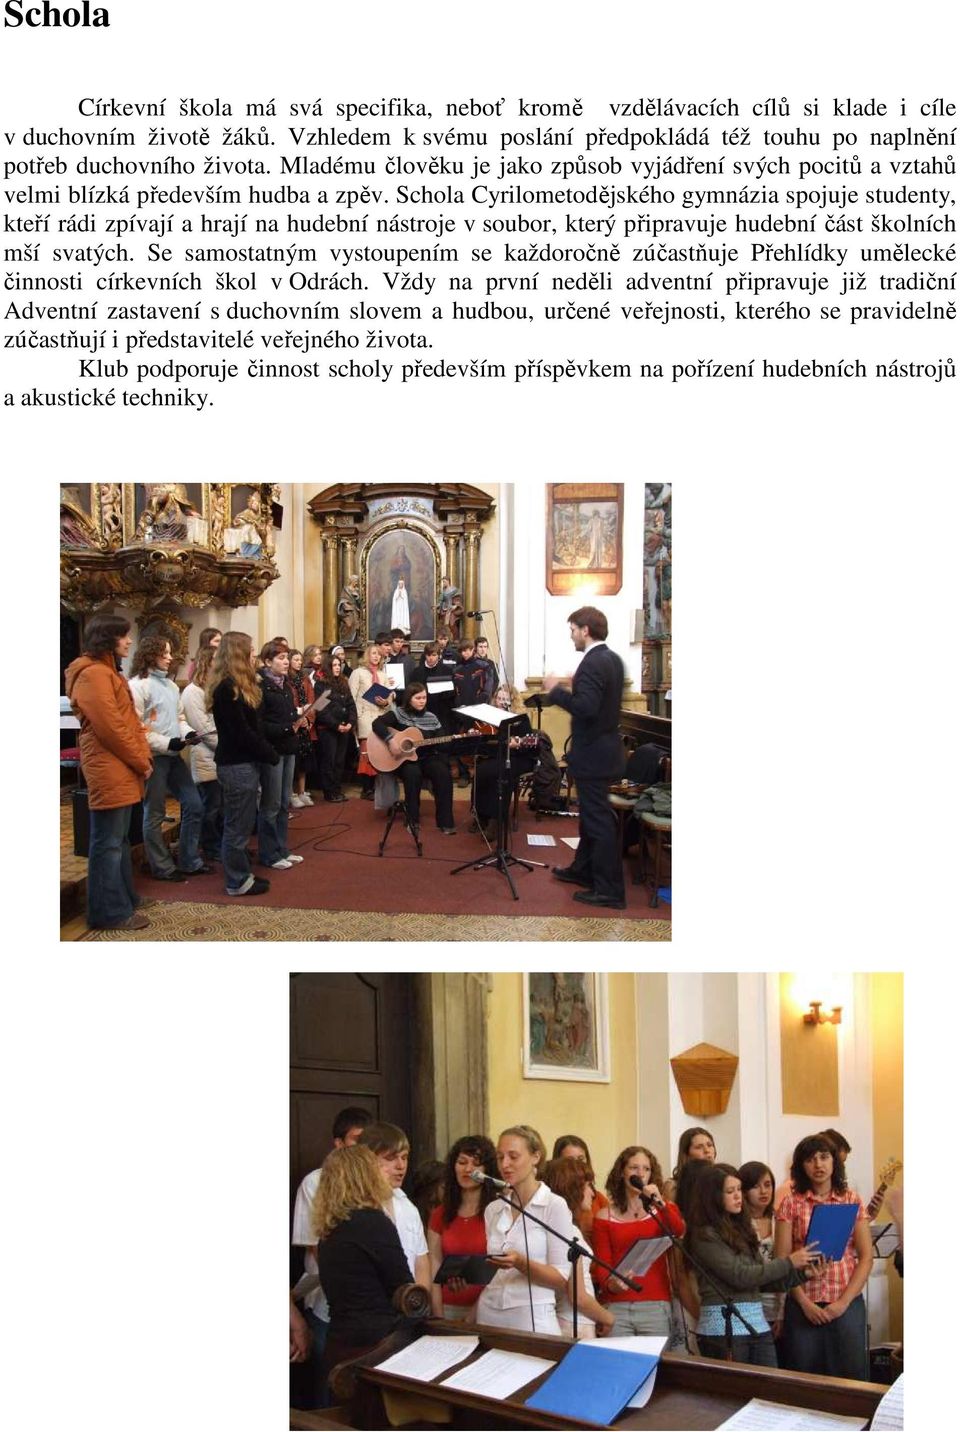 Schola Cyrilometodějského gymnázia spojuje studenty, kteří rádi zpívají a hrají na hudební nástroje v soubor, který připravuje hudební část školních mší svatých.